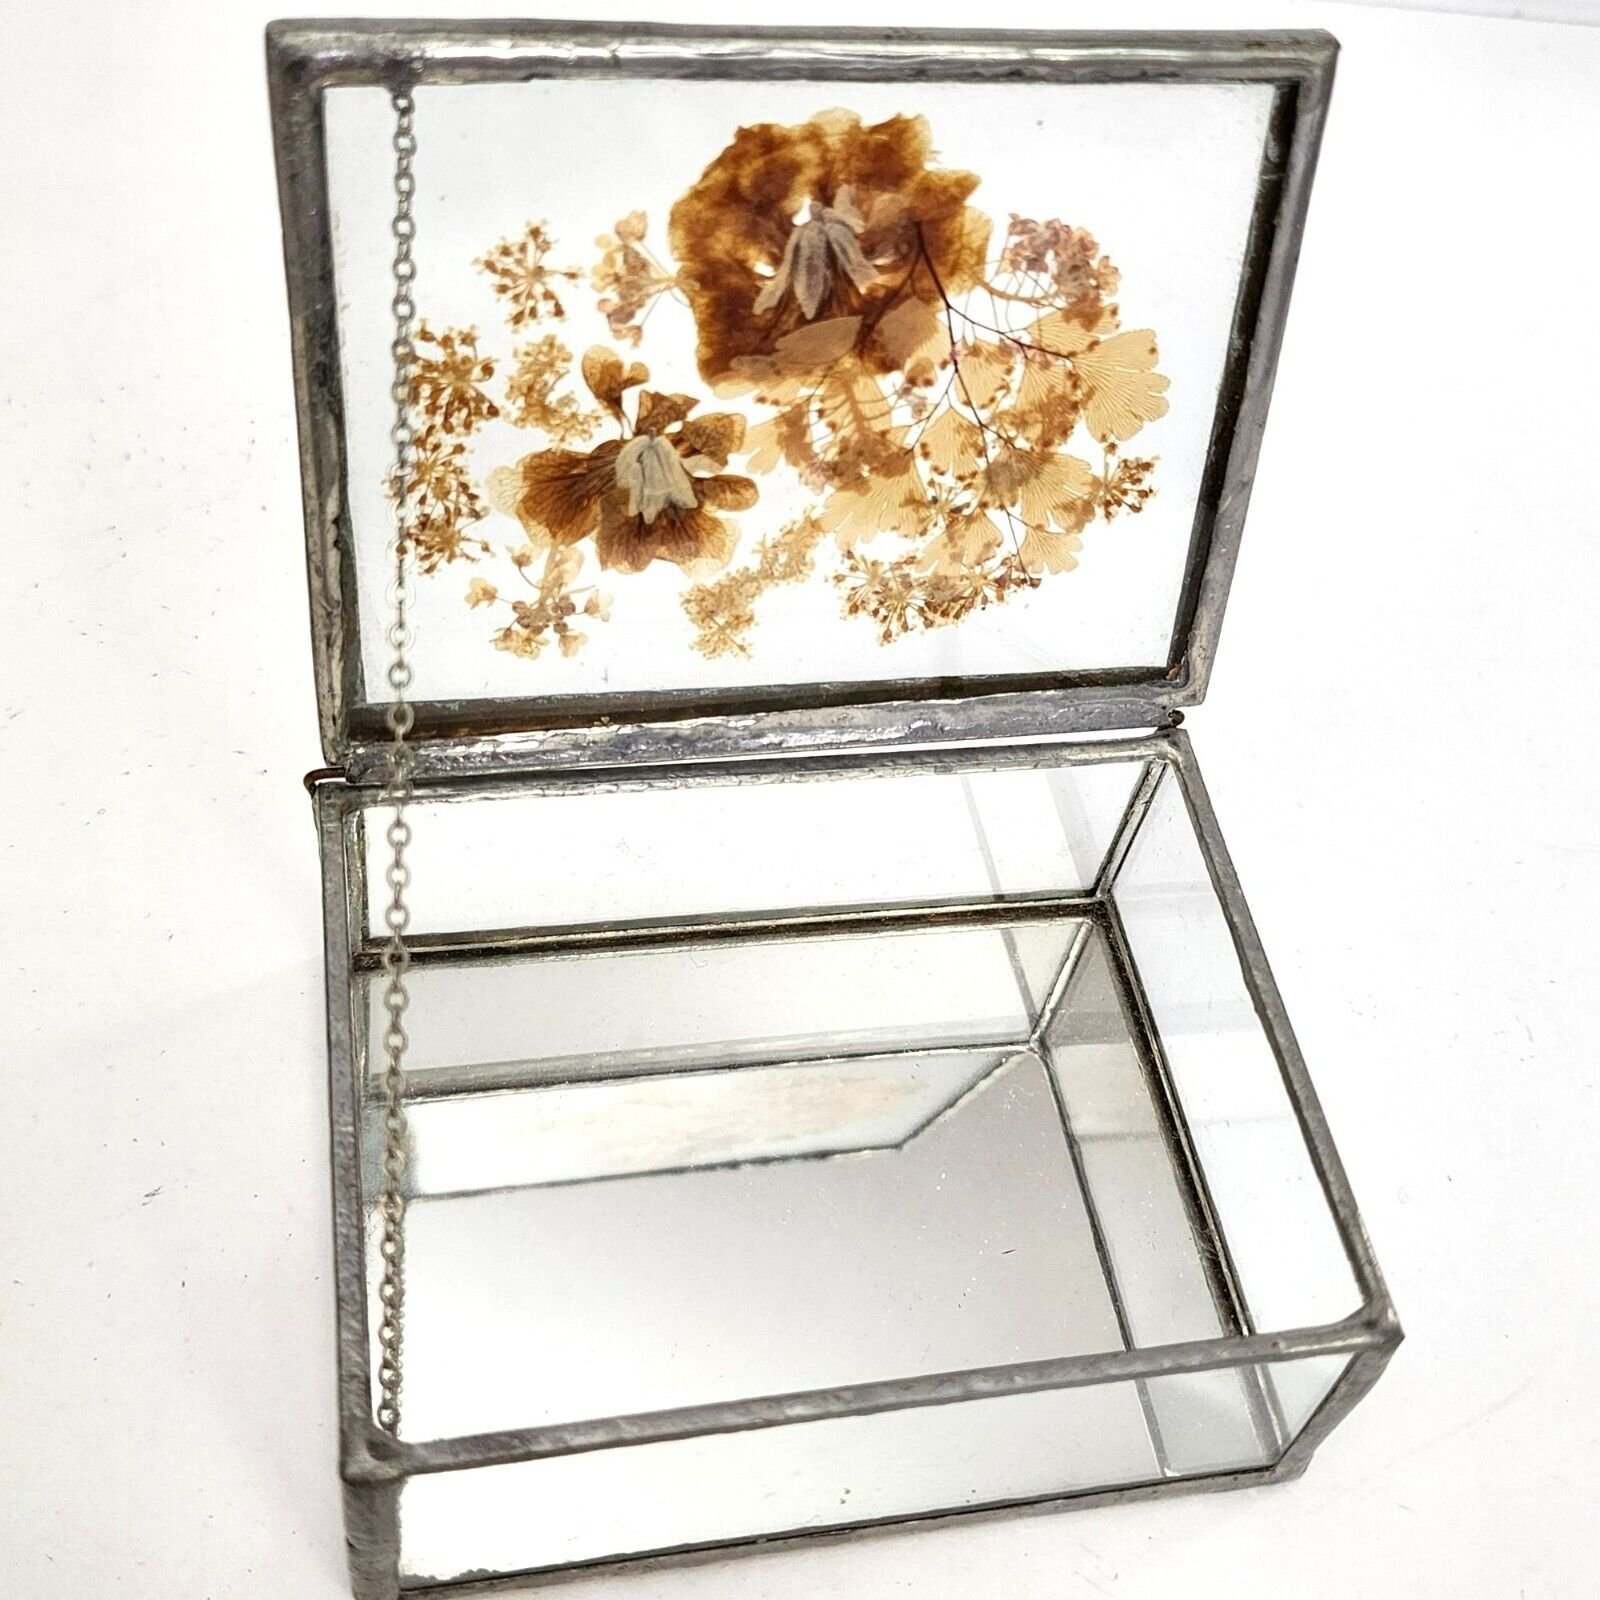 Vintage Pressed Botanical Flowers Glass Jewelry Trinket Box Mirror Bottom 4 x 3